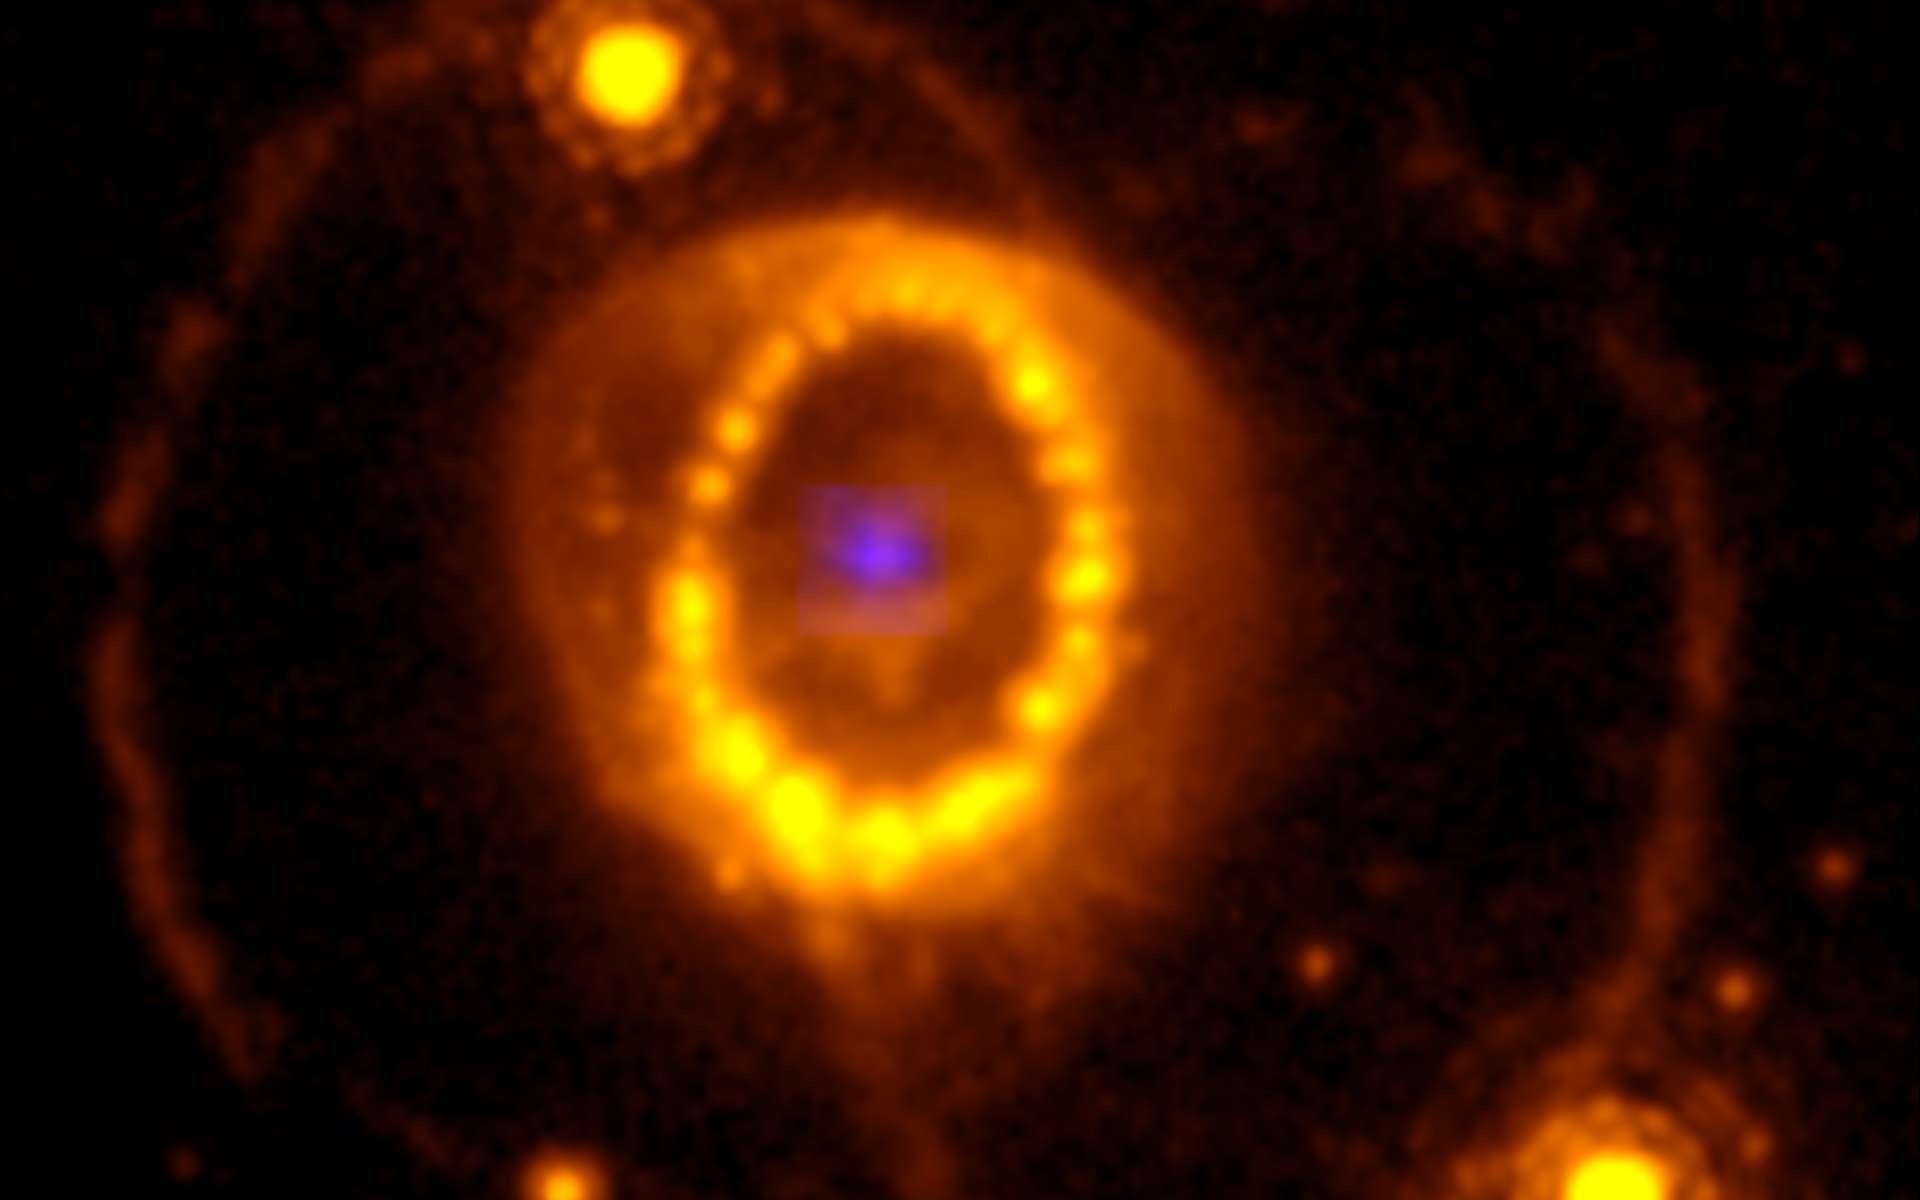 Le télescope James-Webb résout l'énigme du cadavre stellaire de la mythique supernova SN 1987A